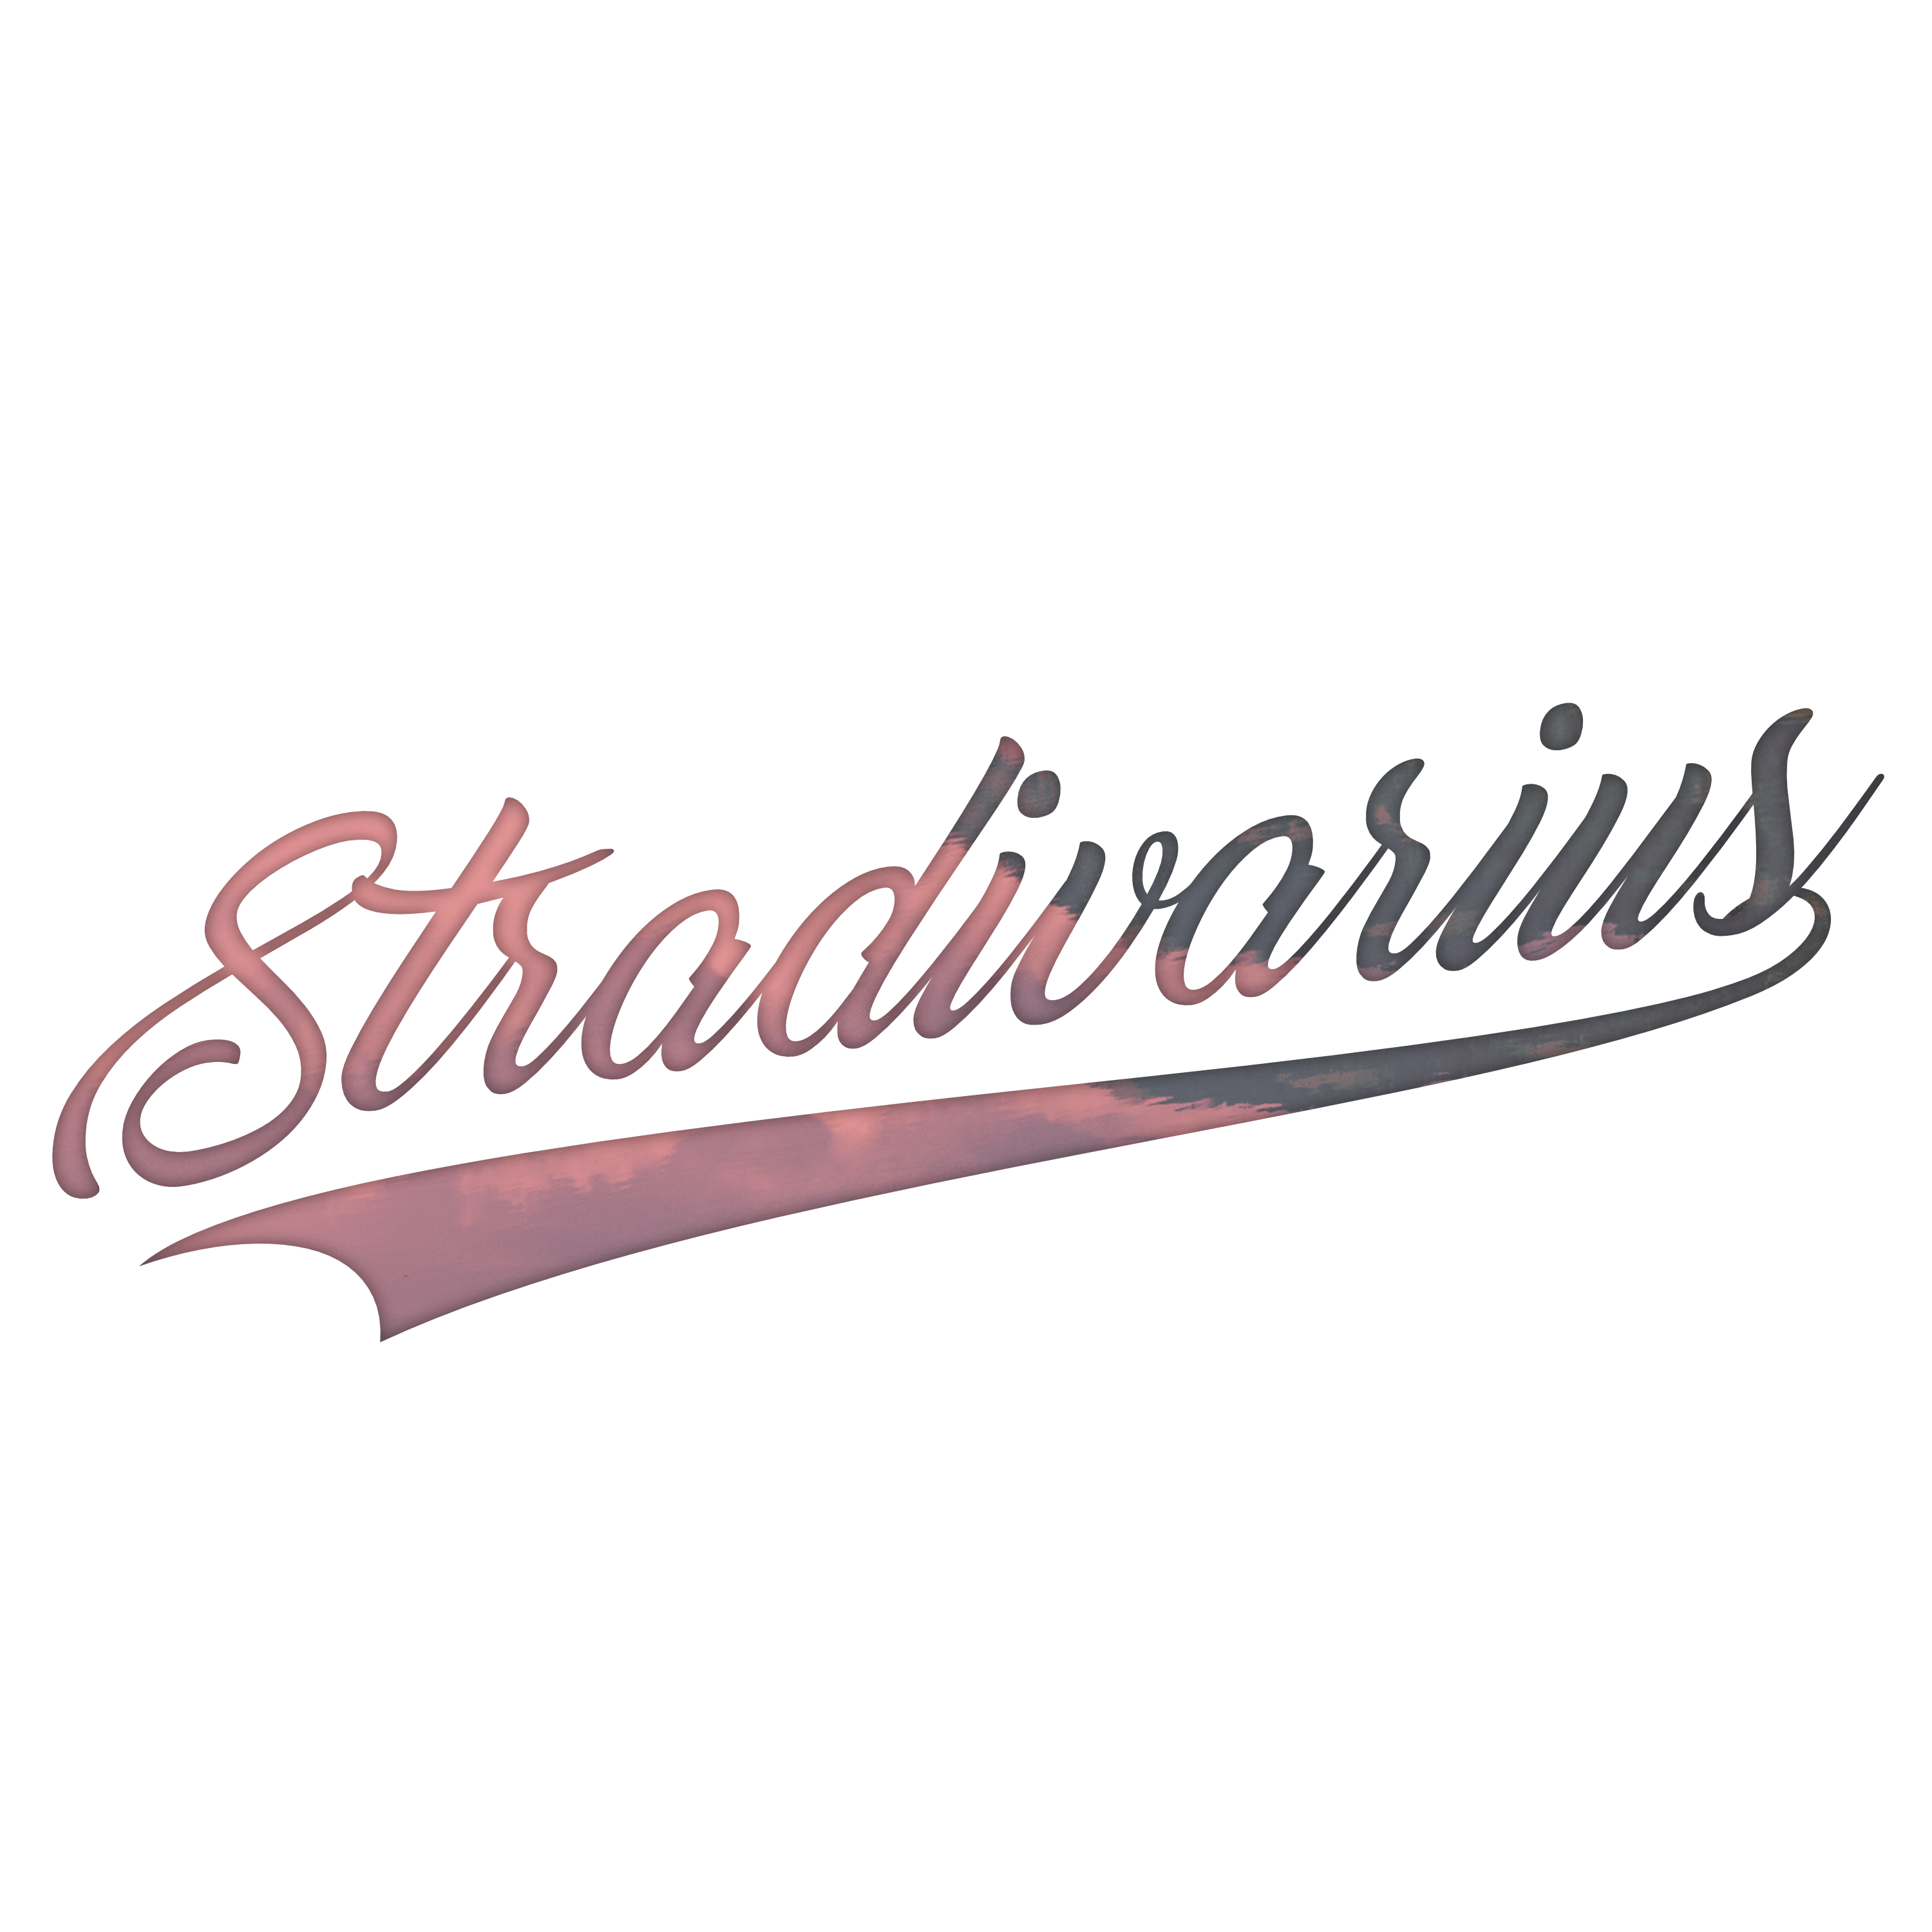 Stradivarius Logo - Logo For Stradivarius | MY WORK en 2019